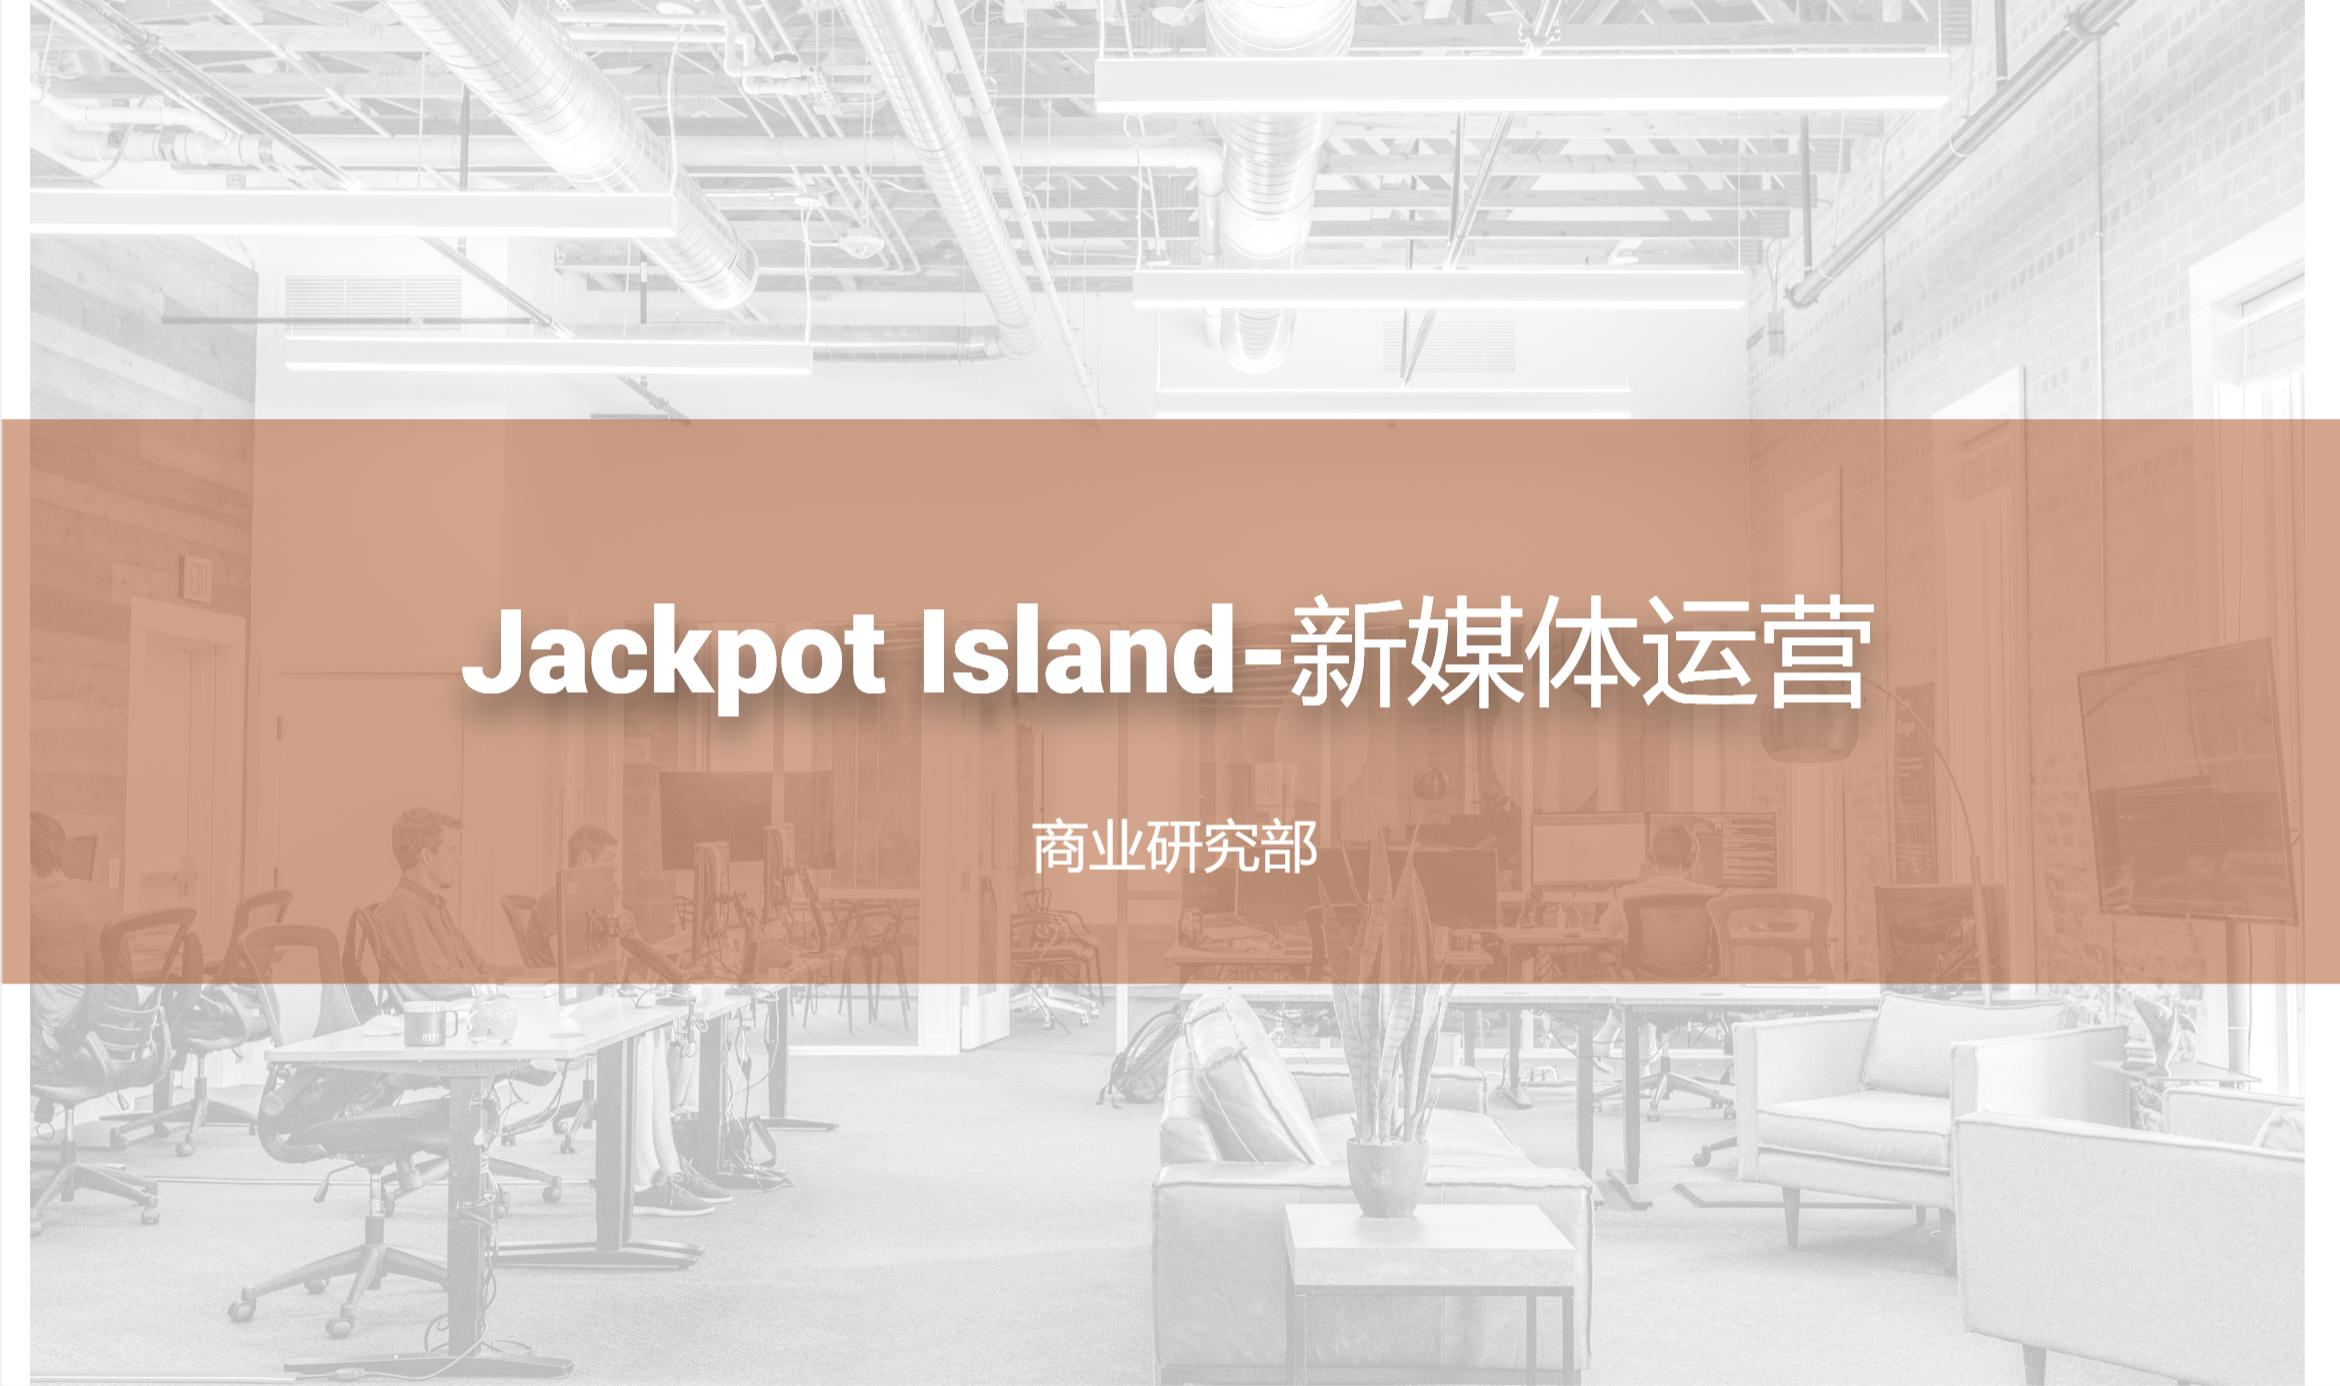 Jackpot Island-新媒体运营